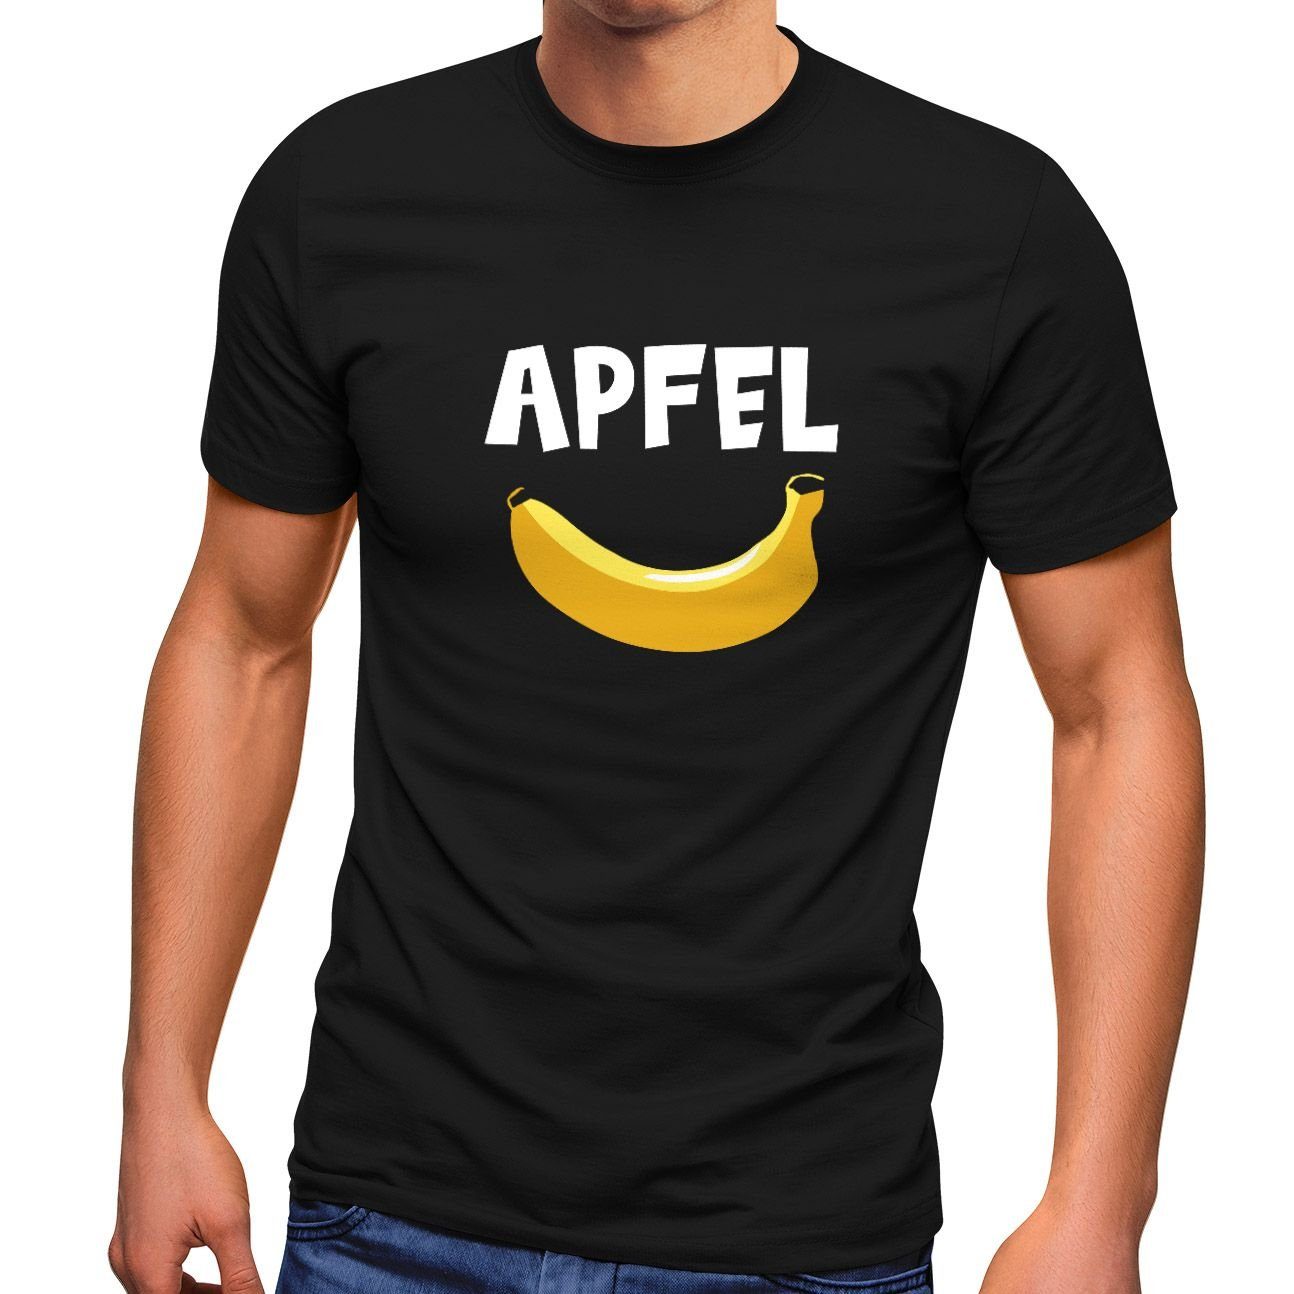 Print-Shirt Moonworks® Spruch Aufdruck Apfel Herren Fun-Shirt schwarz MoonWorks mit lustiger Witz Banane lustig T-Shirt Scherz Print